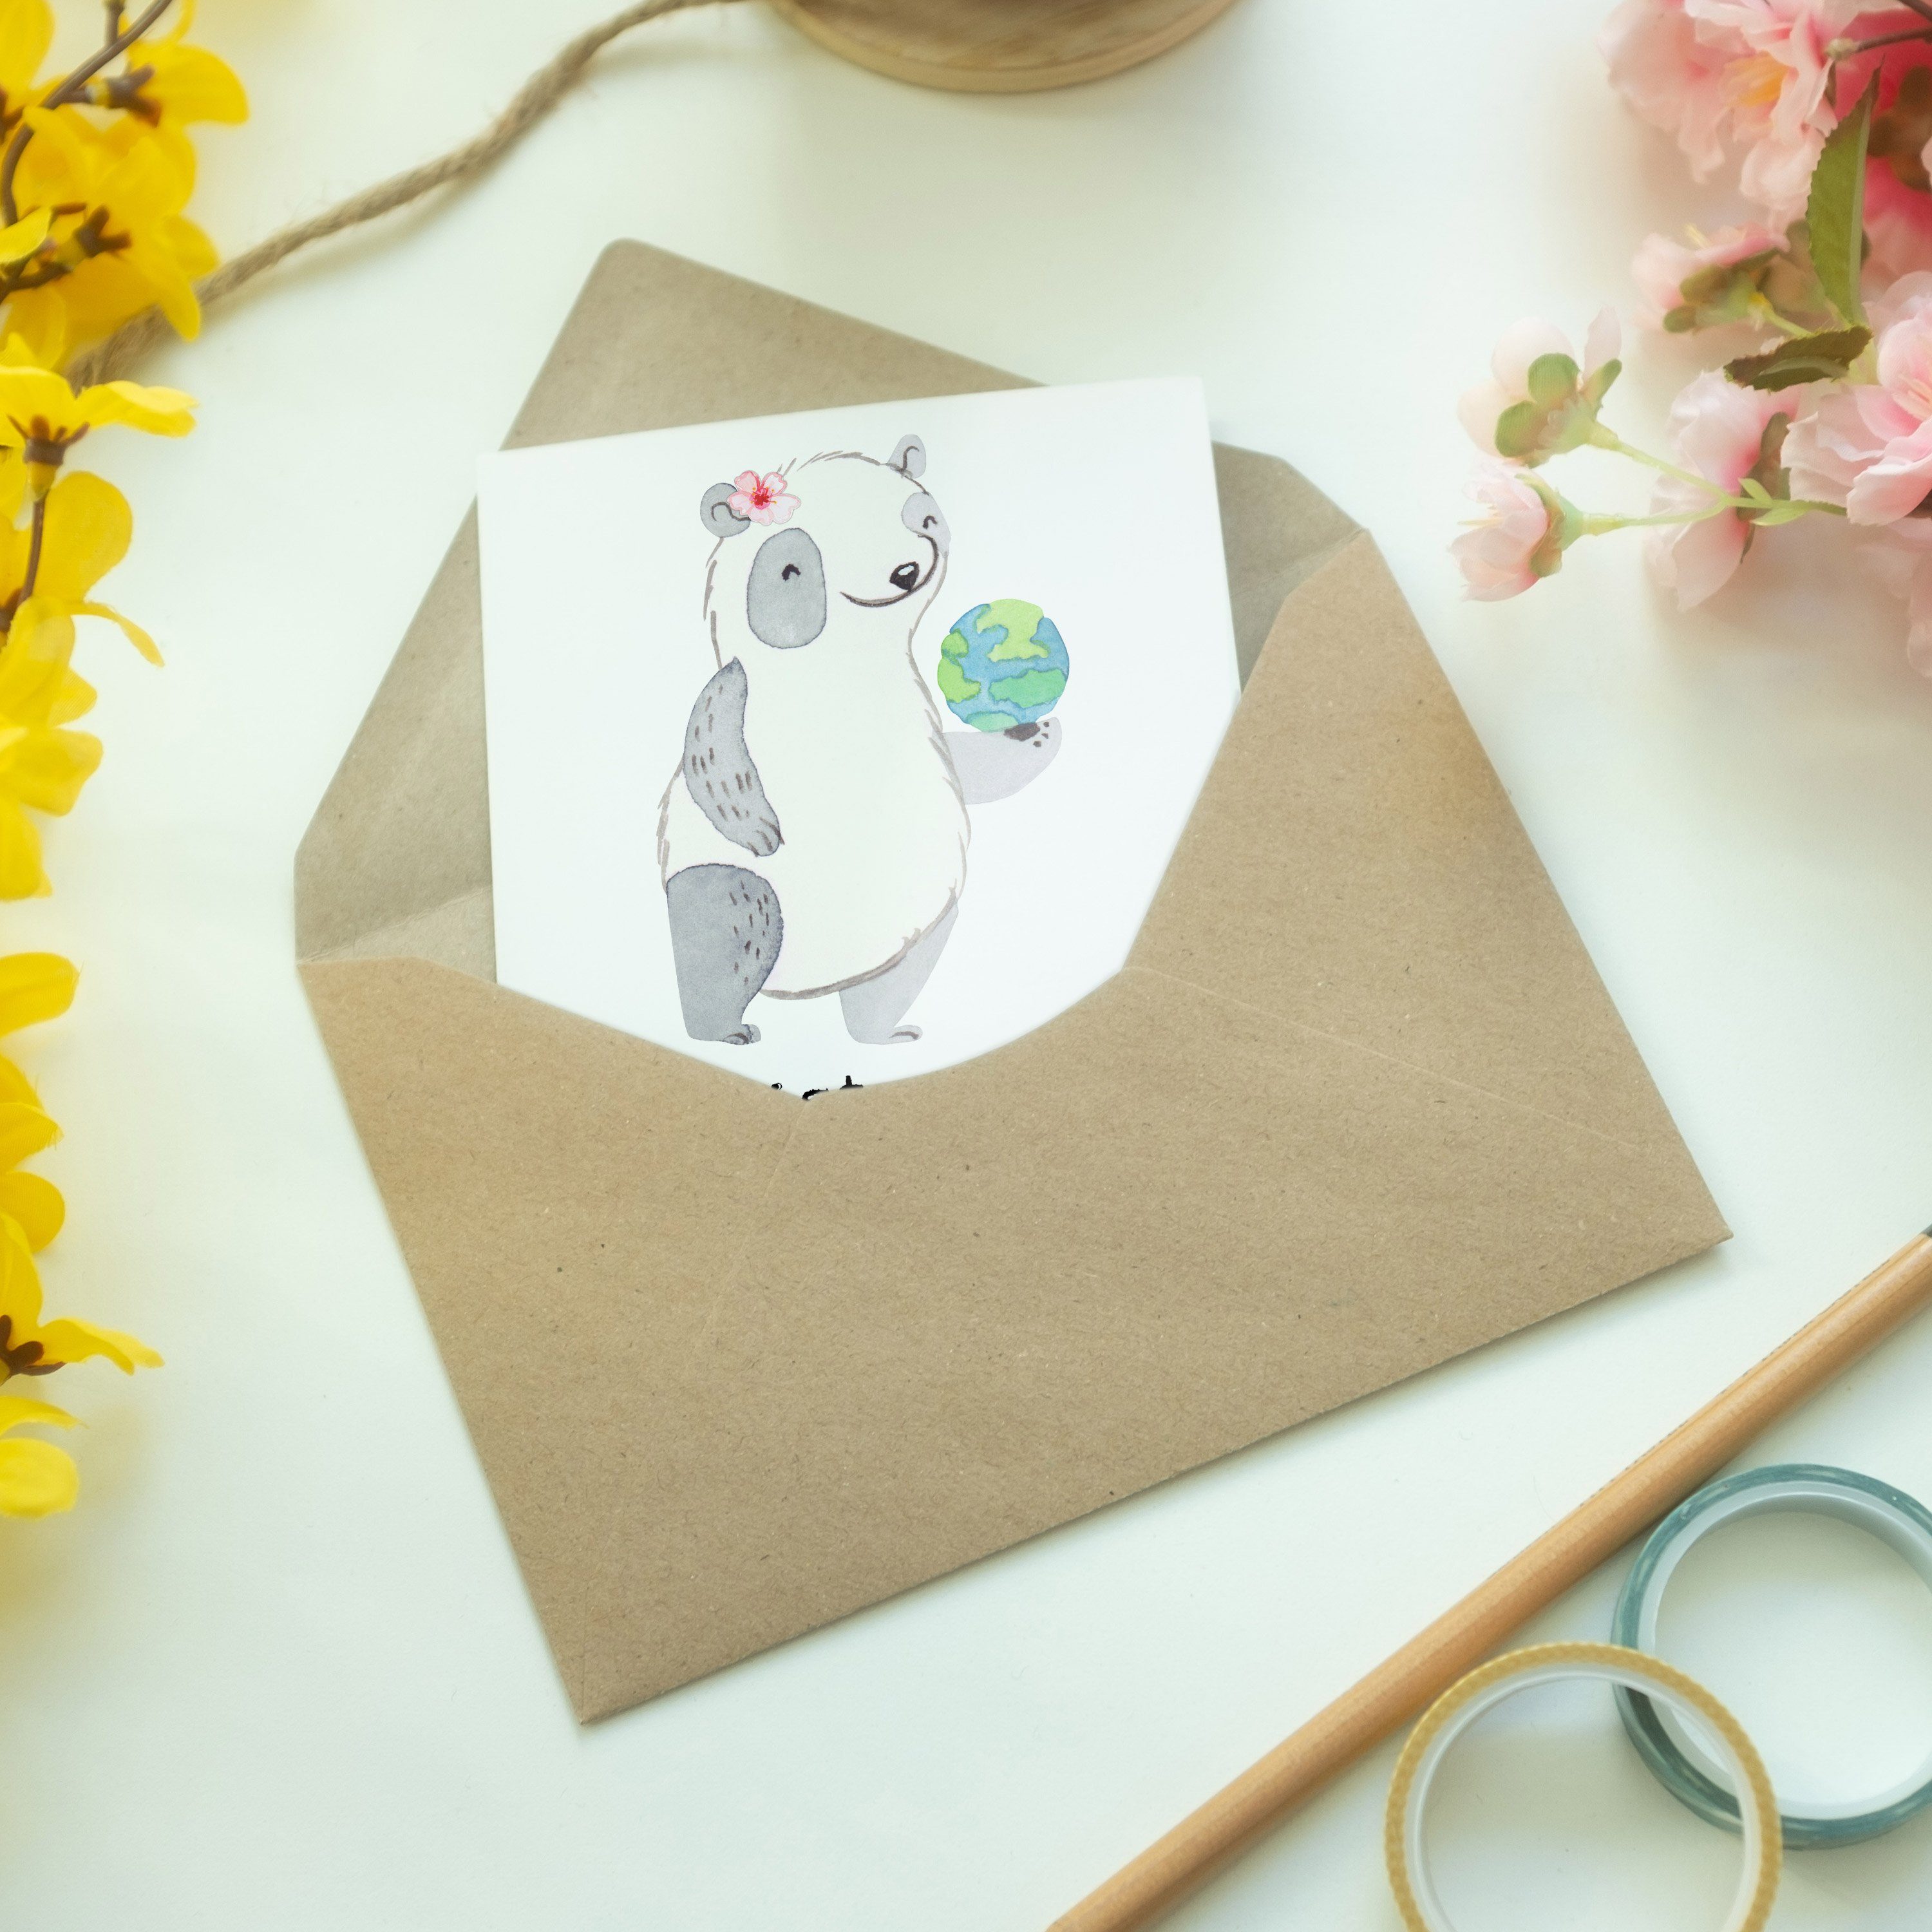 Geschenk, Touristikkauffrau Panda Mrs. Grußkarte Einladungsk Mr. & mit - Herz - Klappkarte, Weiß